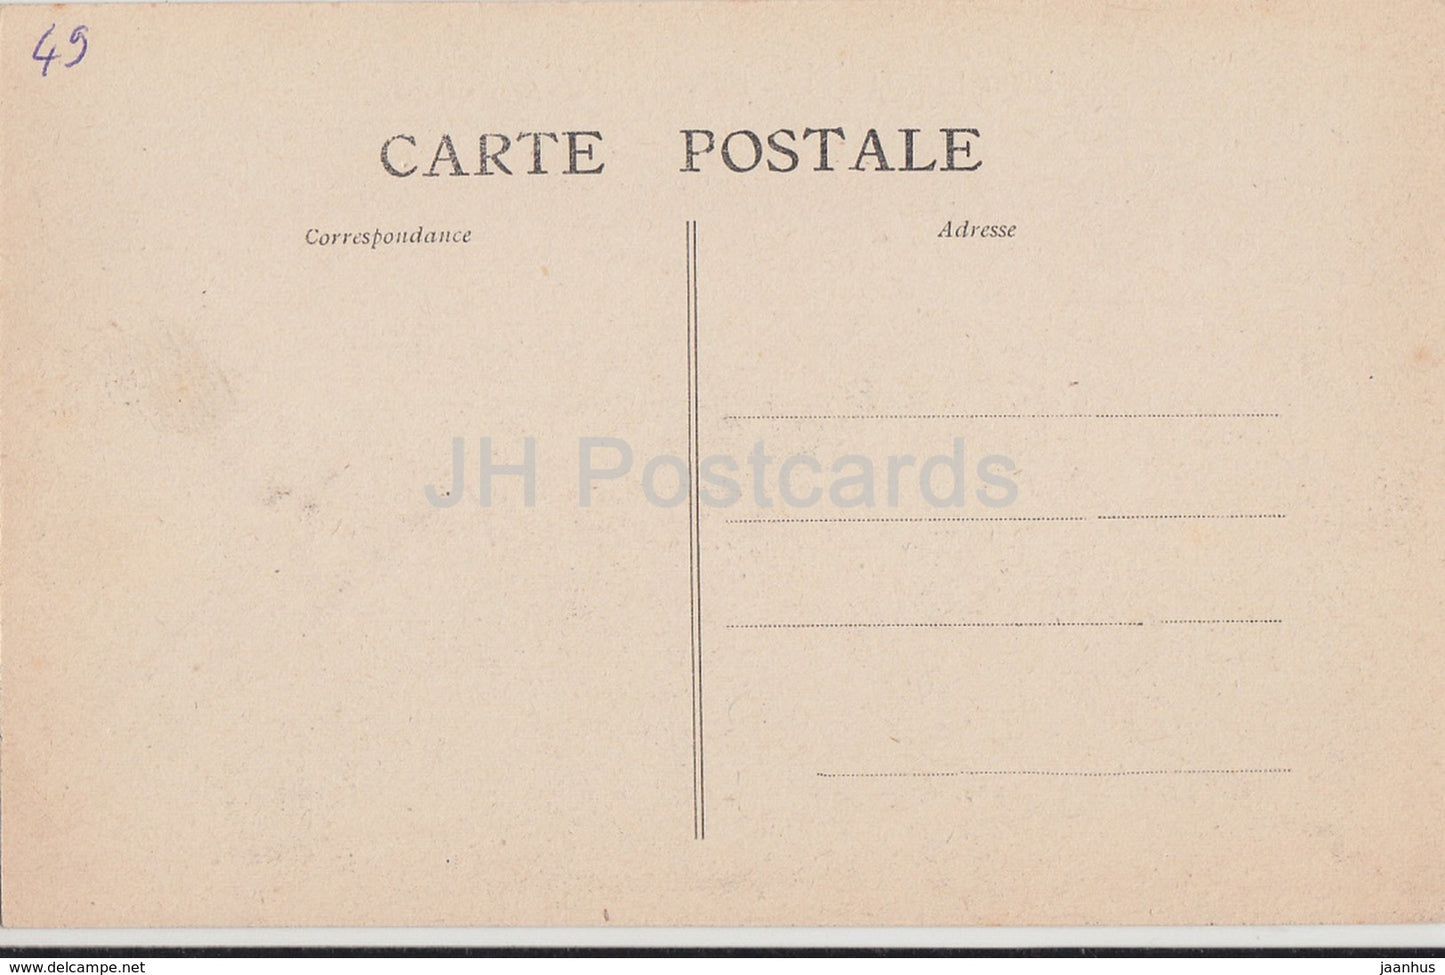 Chemille - Chateau des Cloitres - castle - 327 - old postcard - France - unused